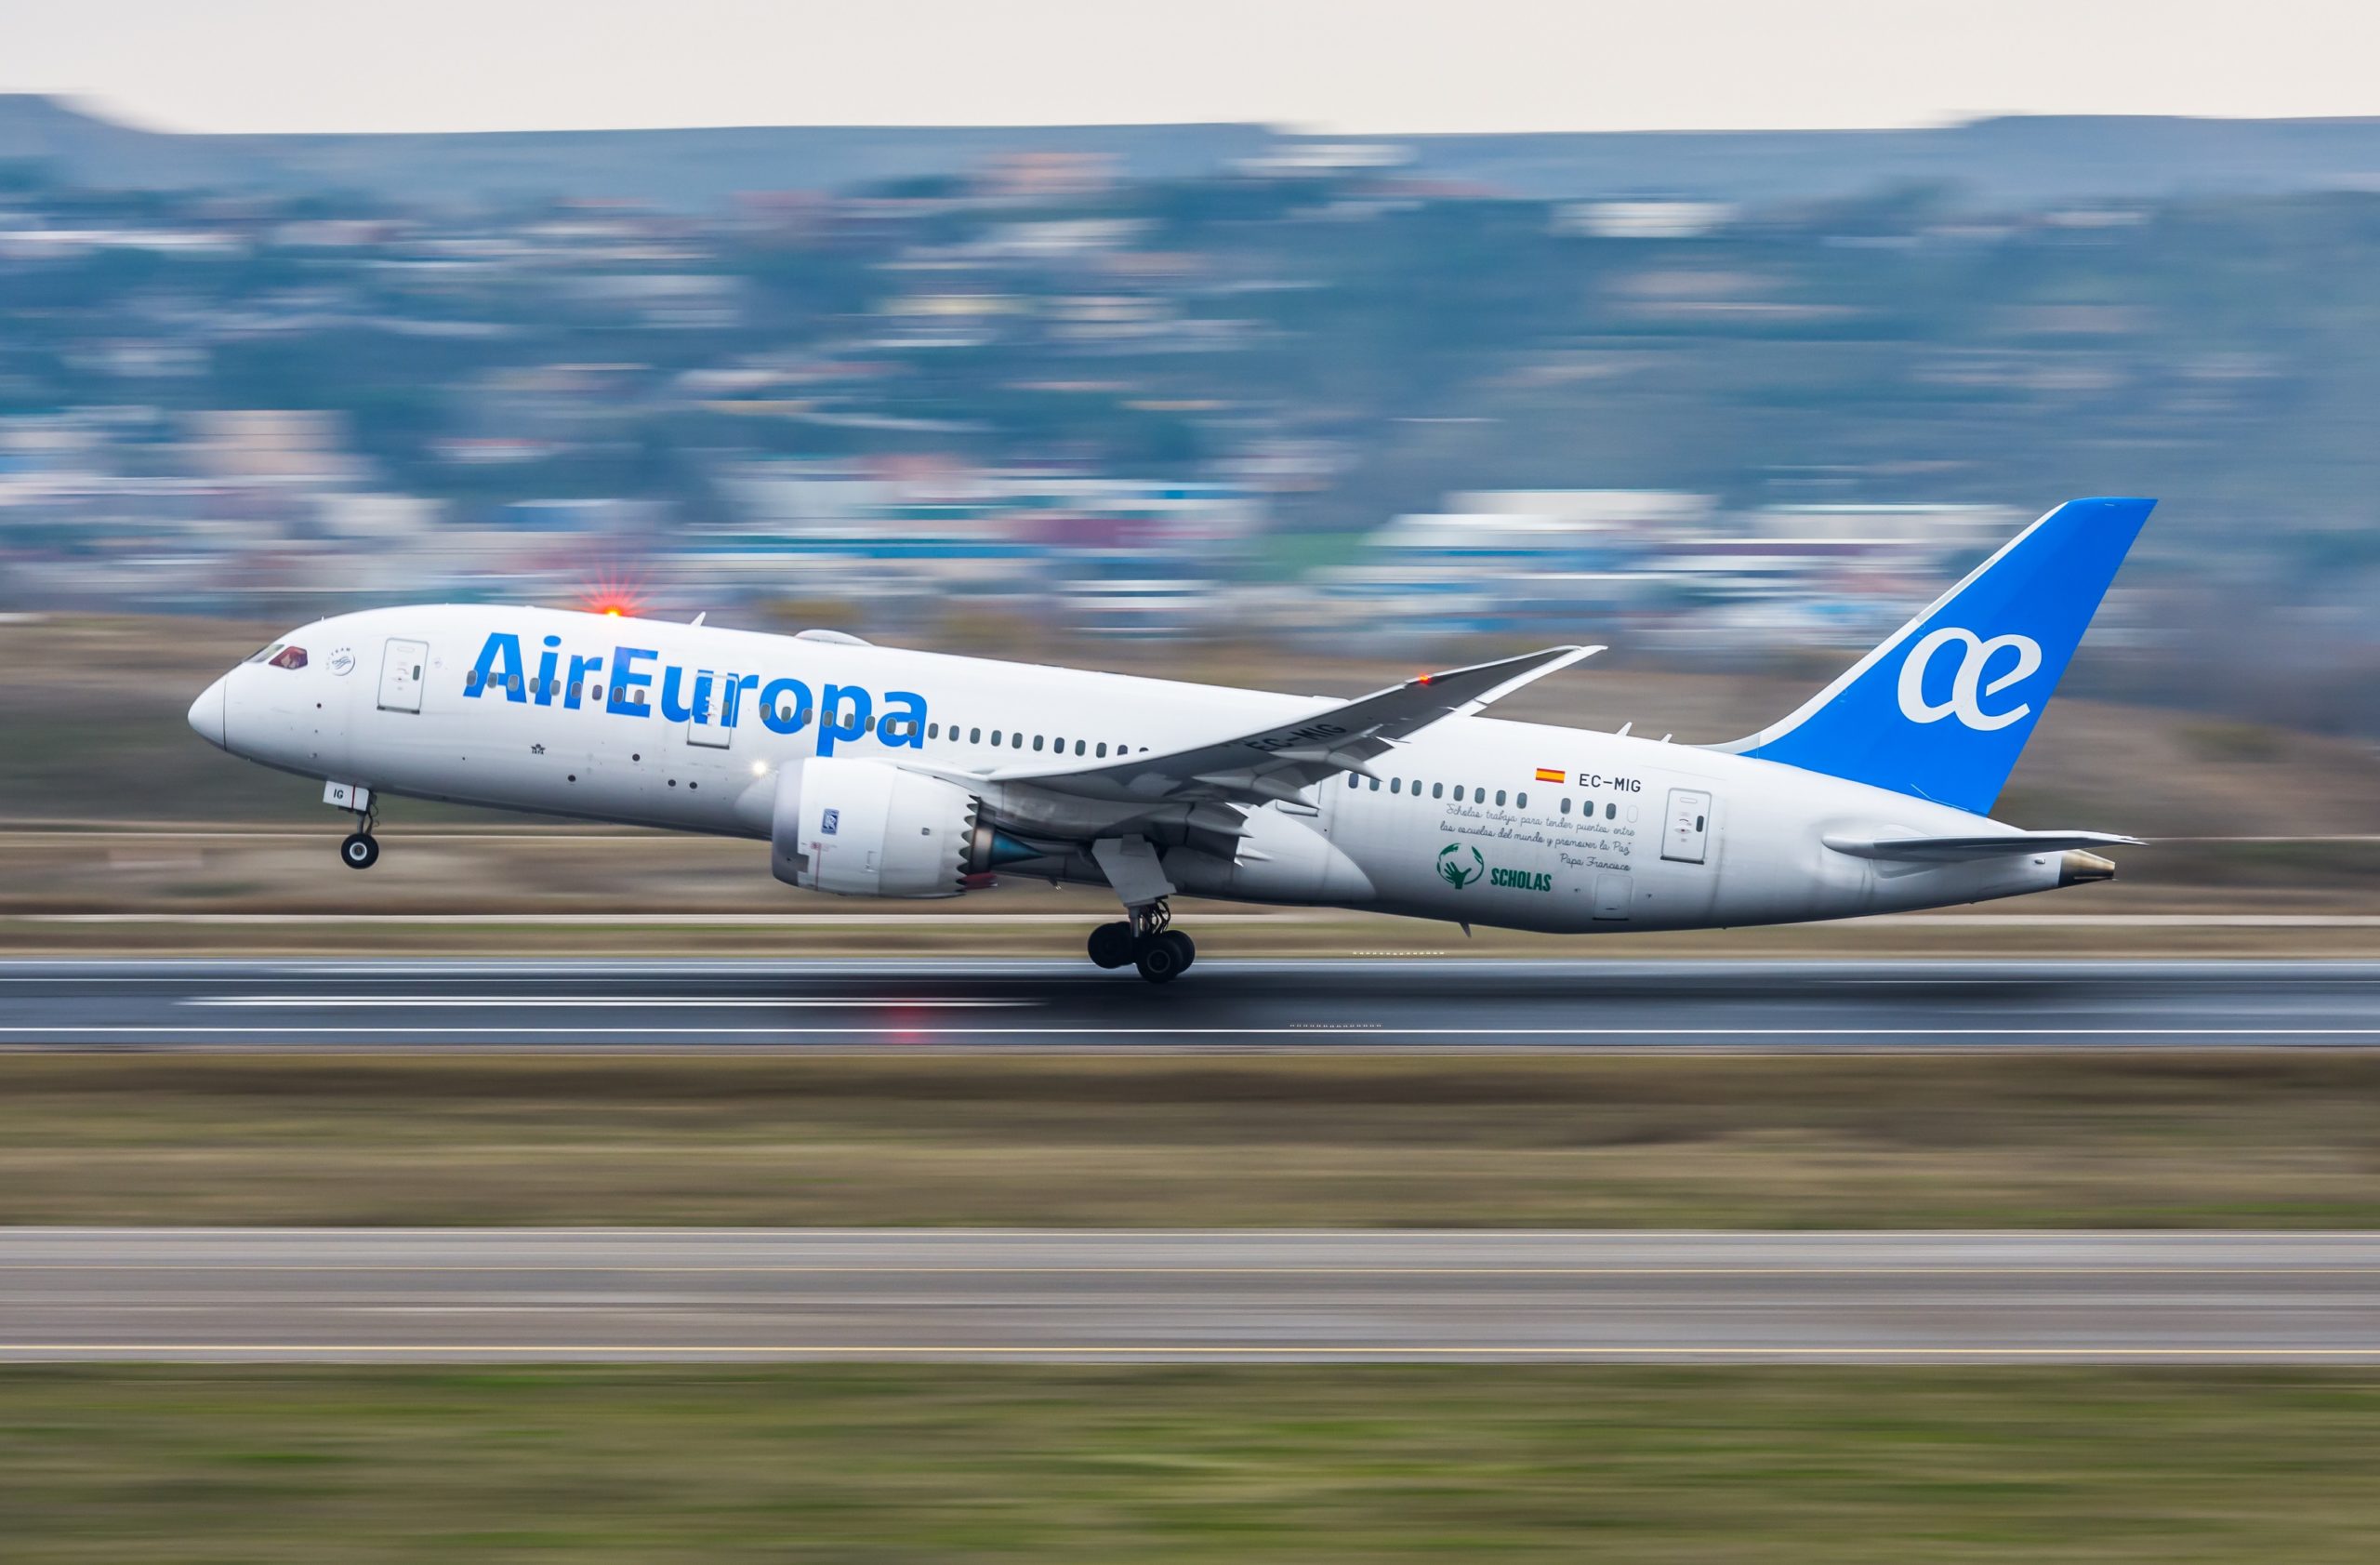 Air Europa amplía su flota con un nuevo Boeing 787-8 Dreamliner